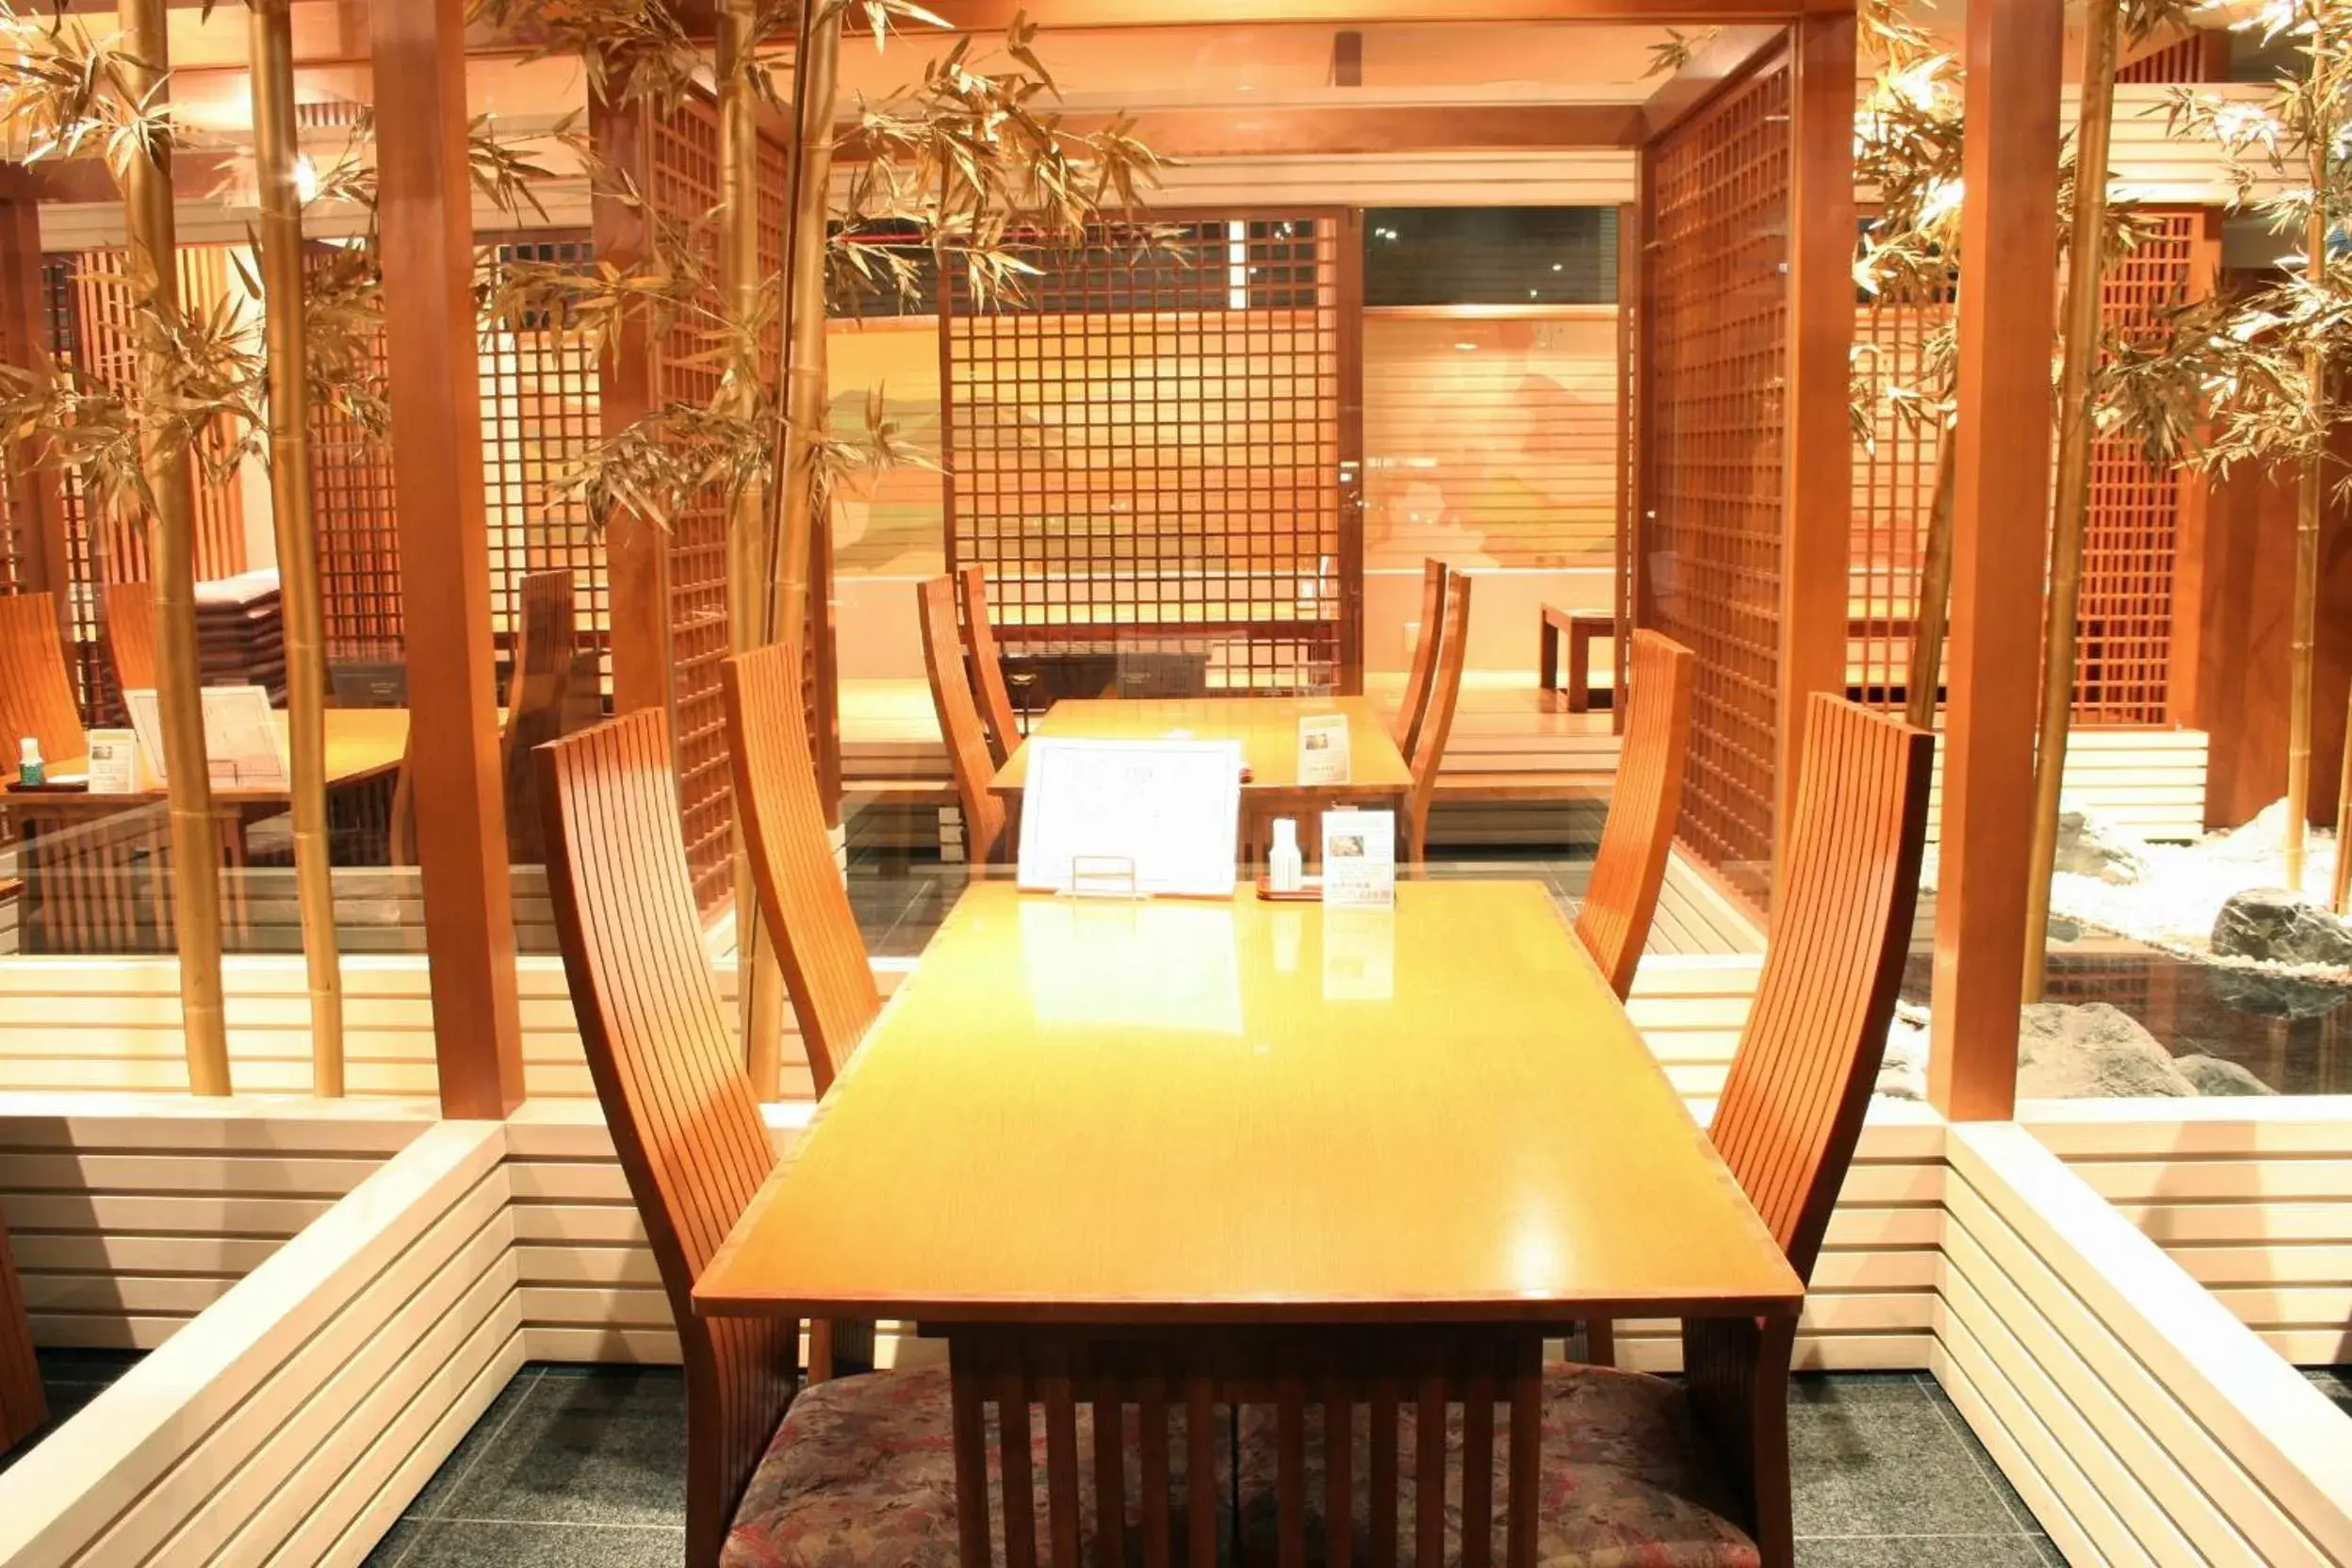 Restaurant/places to eat in Karuizawakurabu Hotel 1130 Hewitt Resort